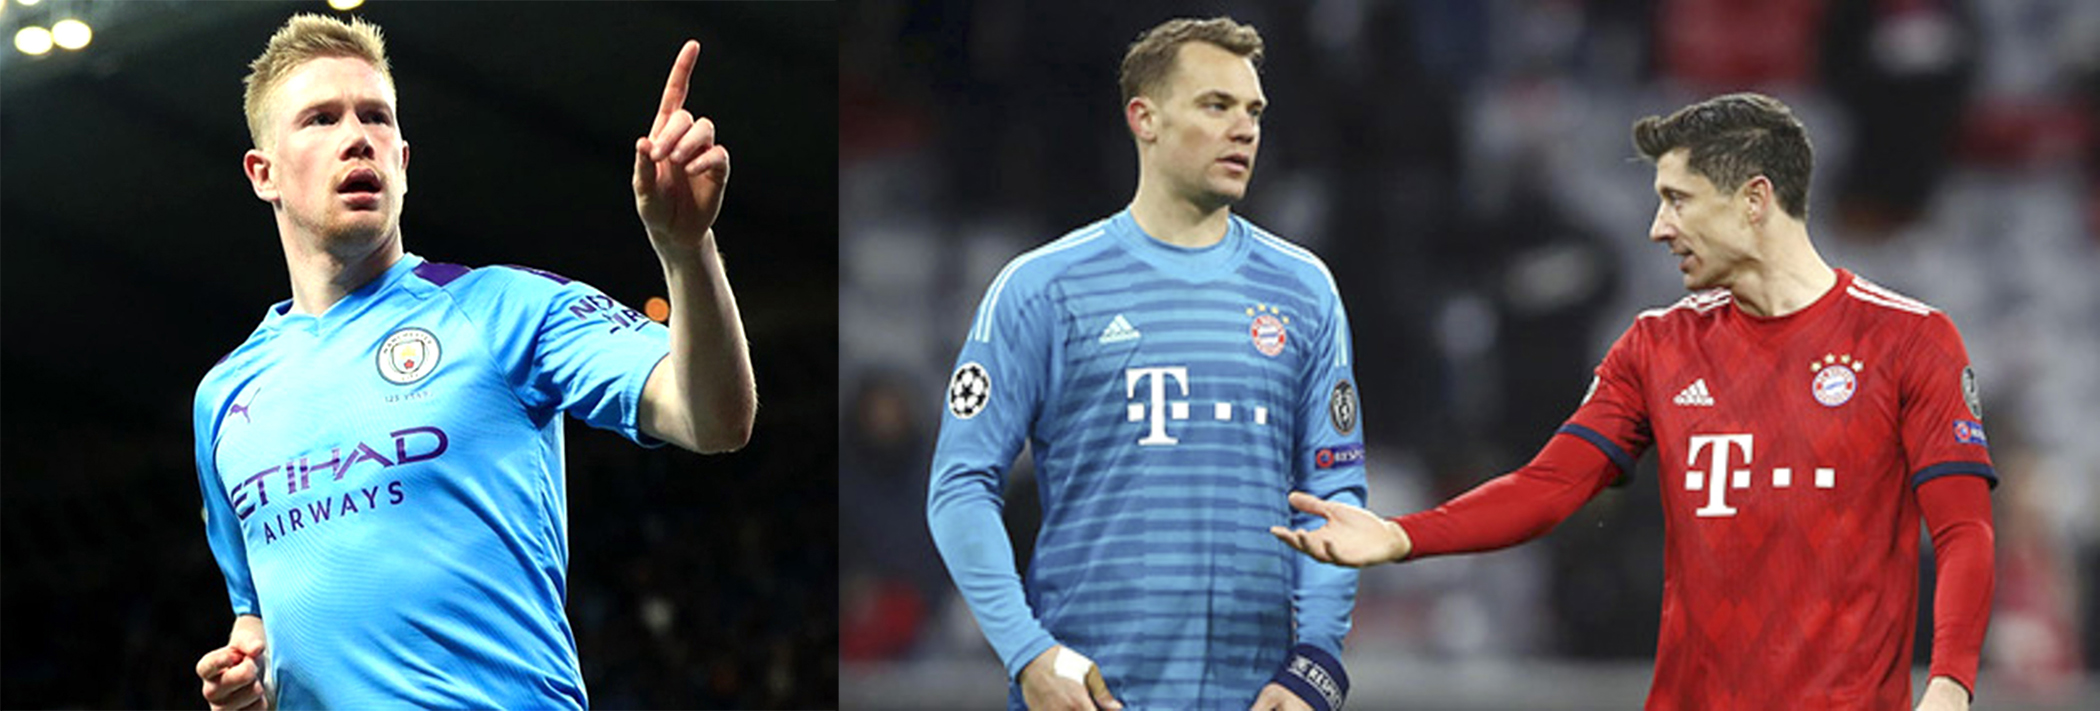 De Bruyne, Neuer và Lewandowski sáng cửa giành danh hiệu Cầu thủ xuất sắc nhất UEFA.